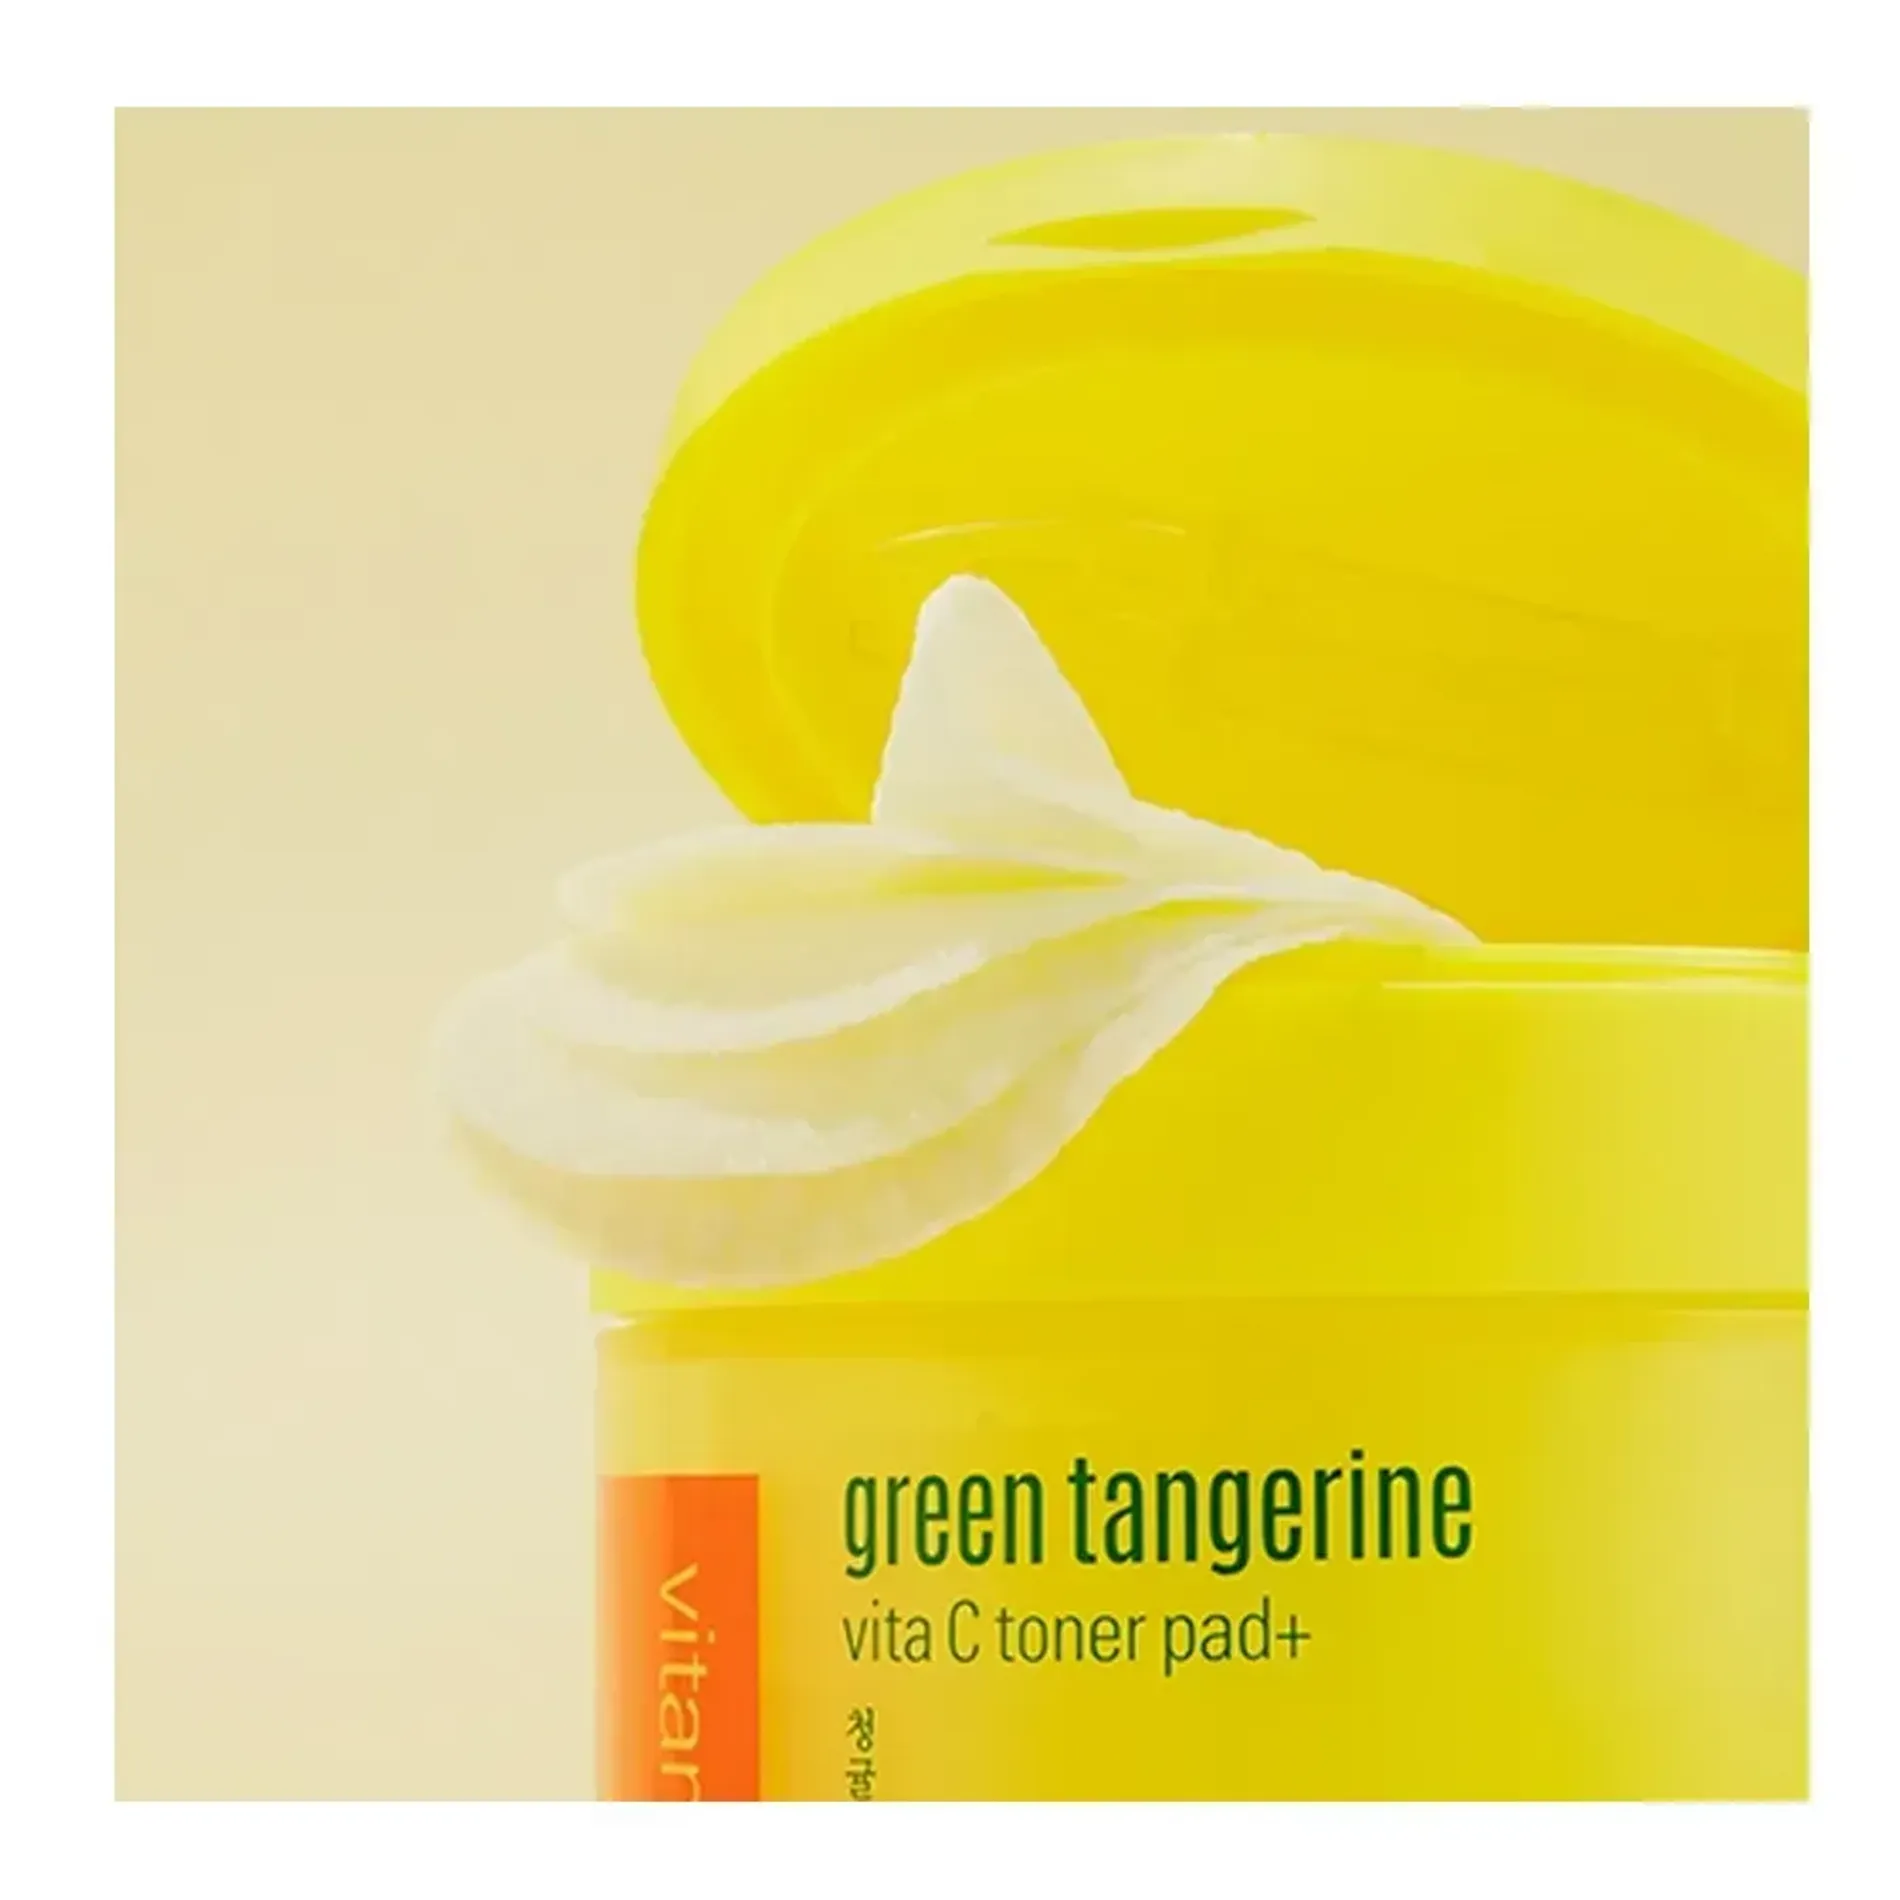 nuoc-can-bang-dang-pad-goodal-green-tangerine-vita-c-toner-pad-70ea-3